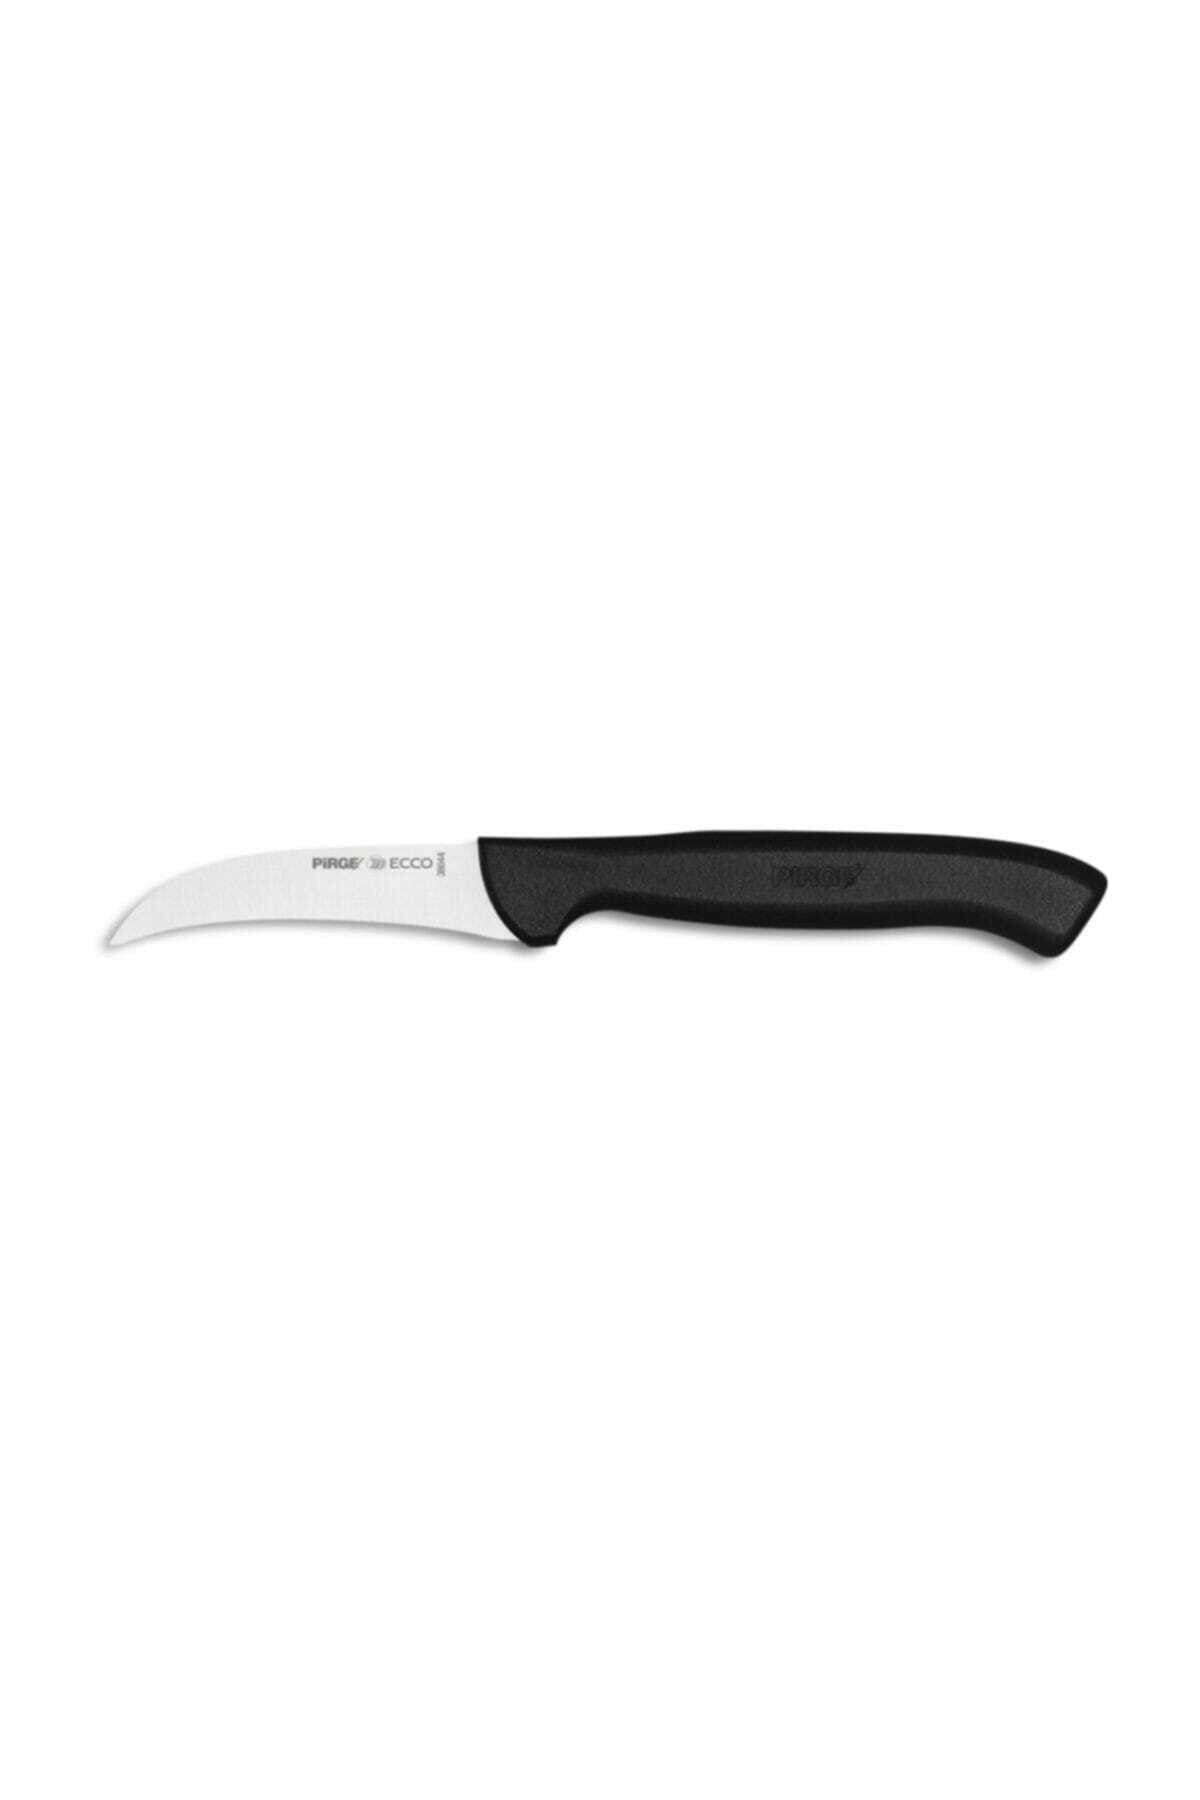 Pirge Ecco Sebze Bıçağı Kıvrık 7,5 Cm